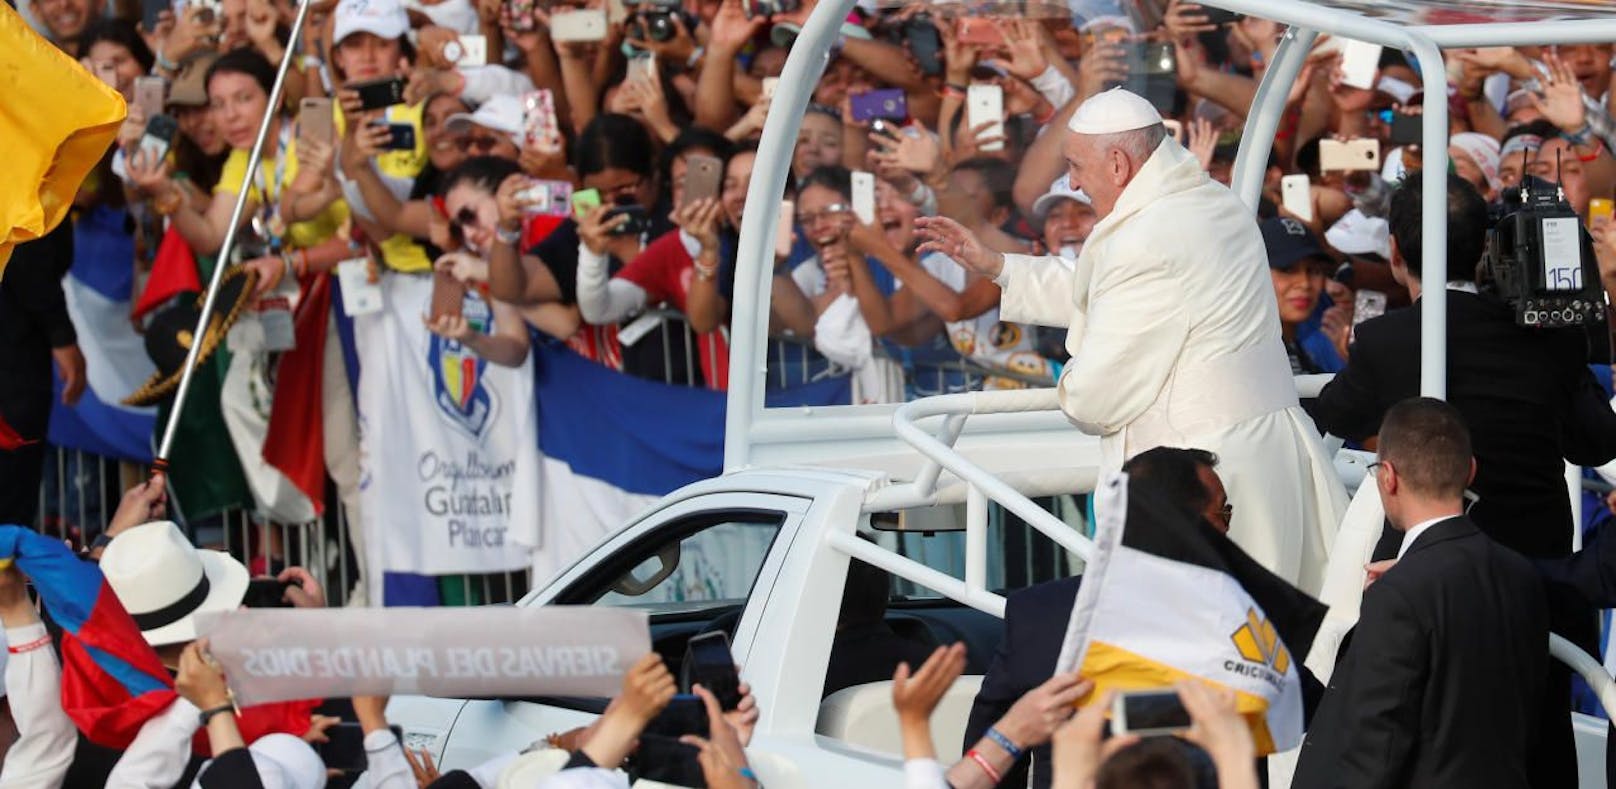 Gefeiert wie ein Popstar: Papst besucht Panama